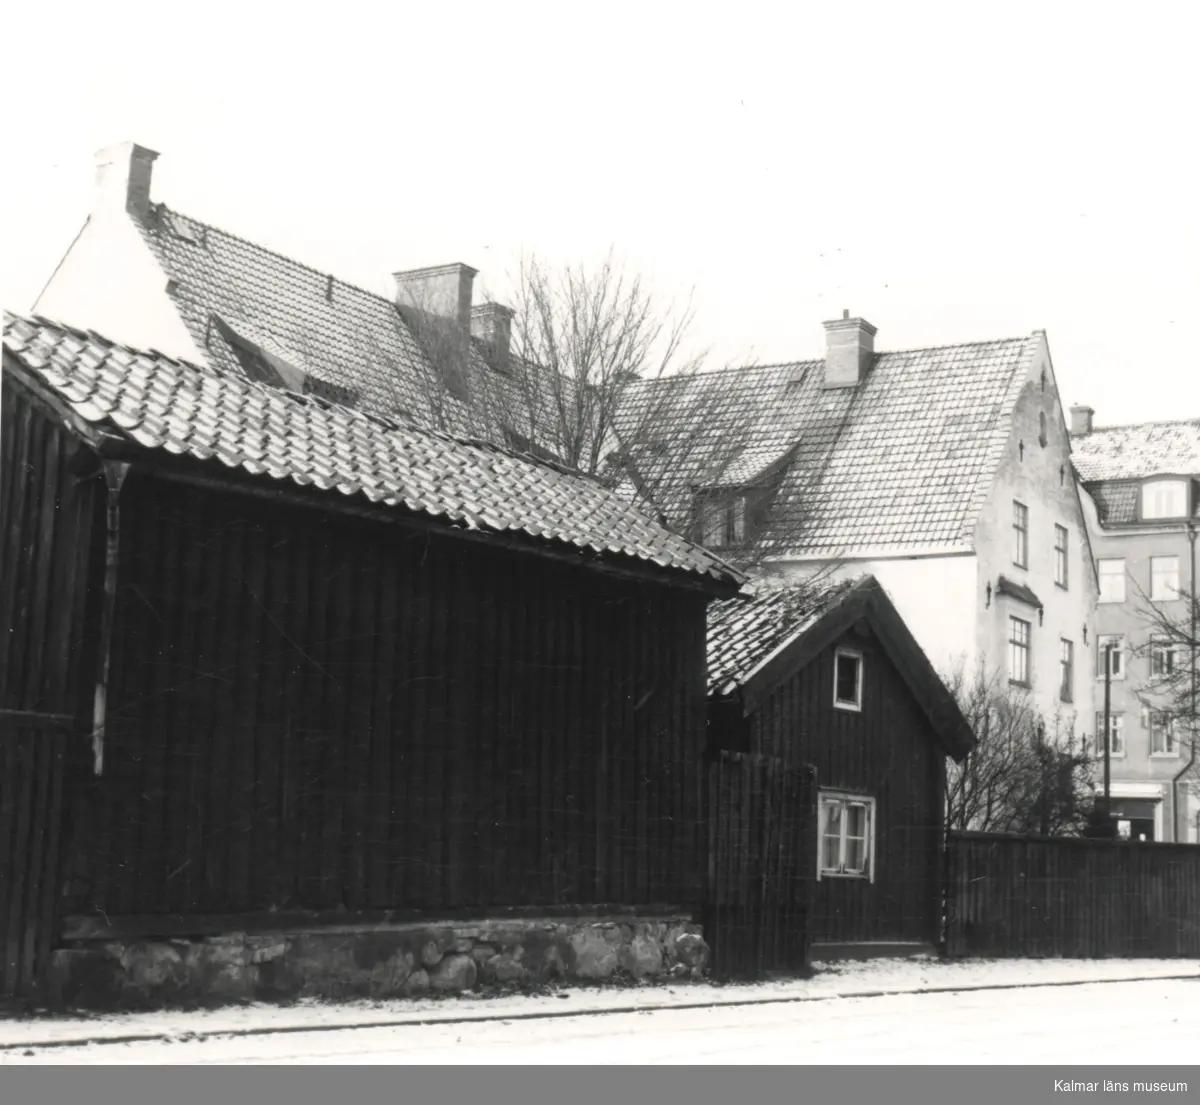 Bläckan 2, åt Jenny Nyströms gränd [före detta Tullgatan].
Foto: KG Pettersson 13/12 1961.